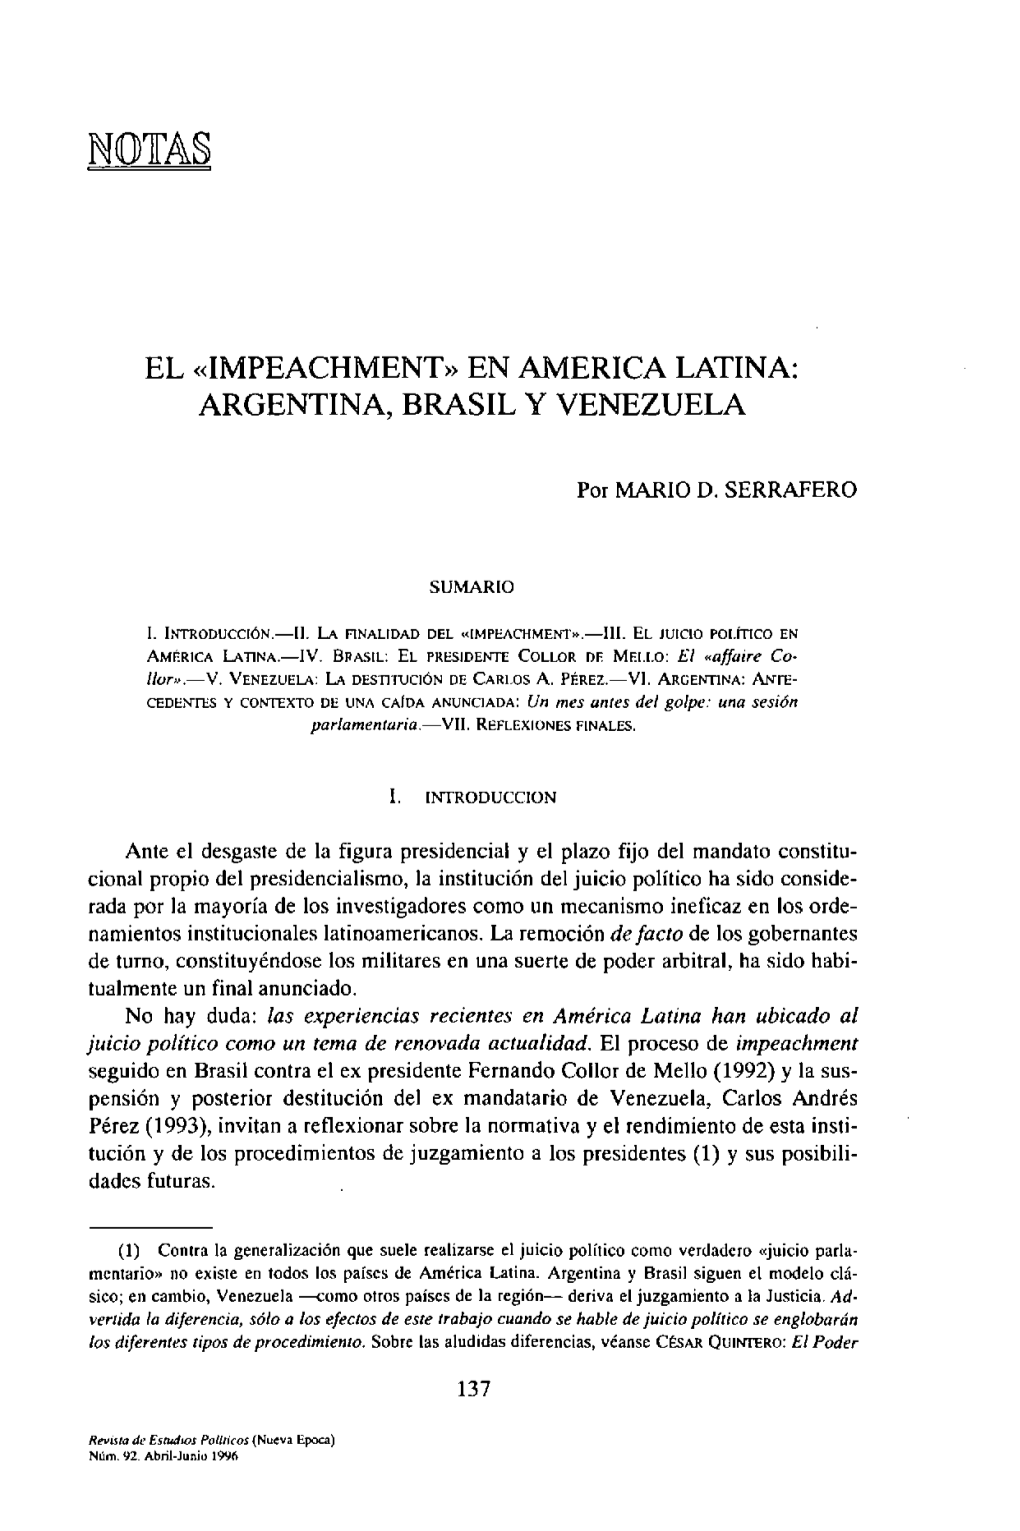 El Impeachment En América Latina: Argentina, Brasil Y Venezuela